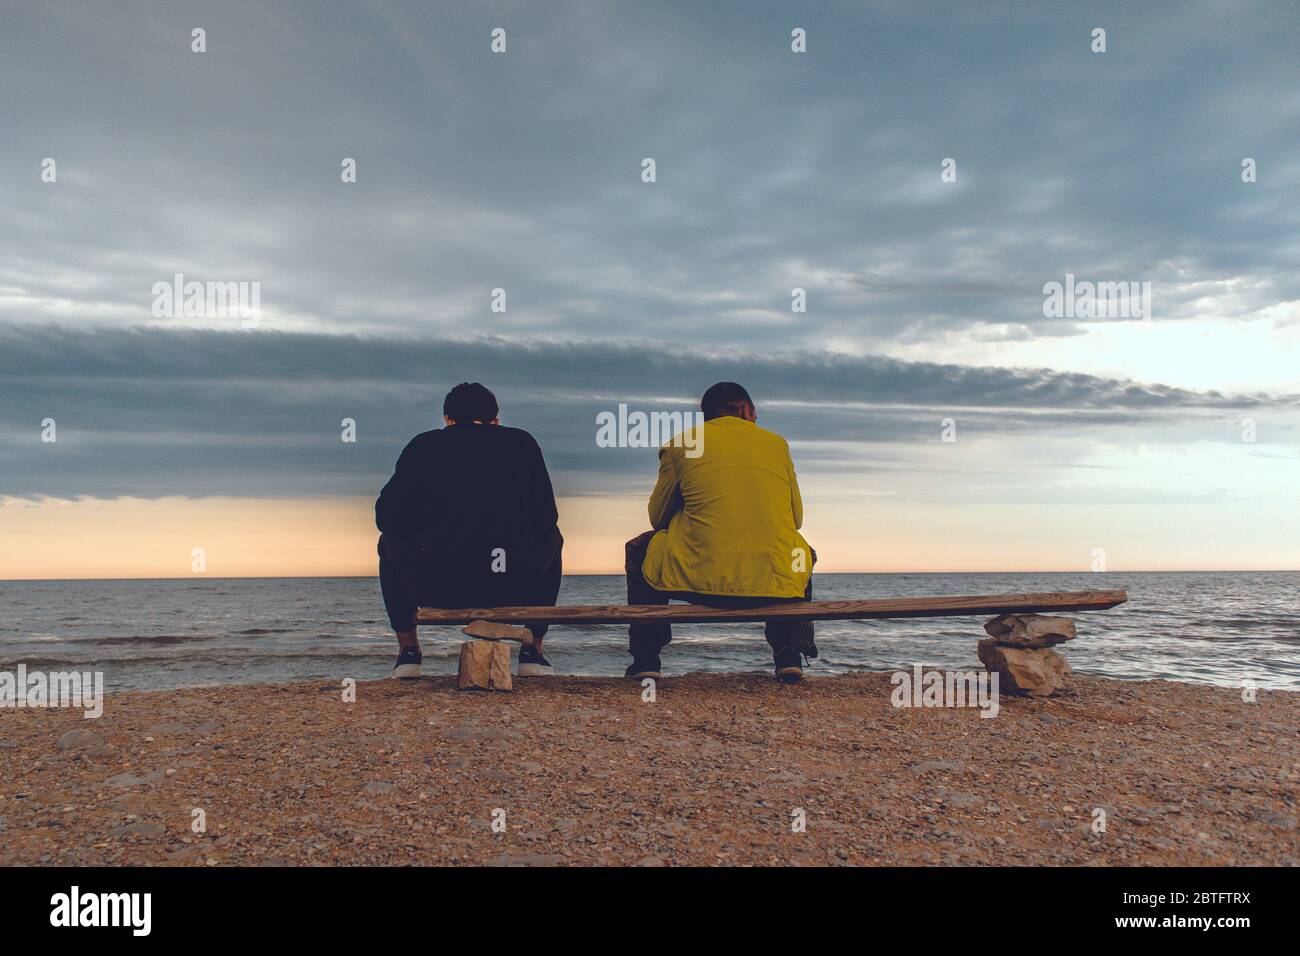 Deux hommes s'assoient sur un banc près d'une plage et regardent l'océan avec des nuages épiques. Banque D'Images